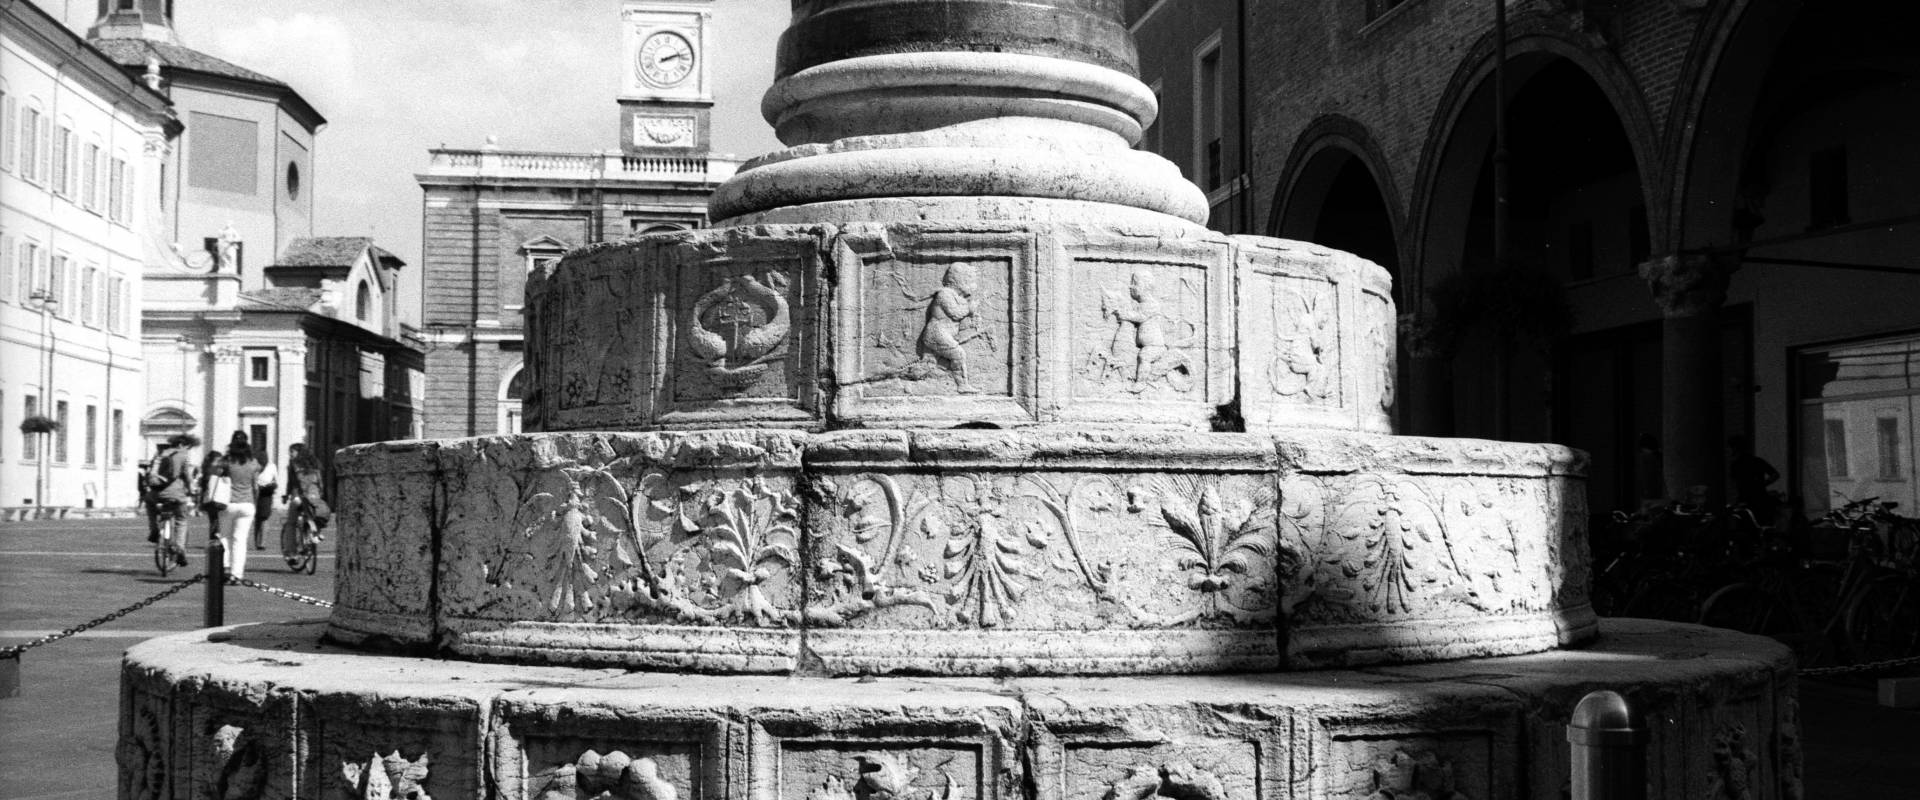 Ravenna - Basamento di una delle due colonne veneziane foto di Emanuele Schembri